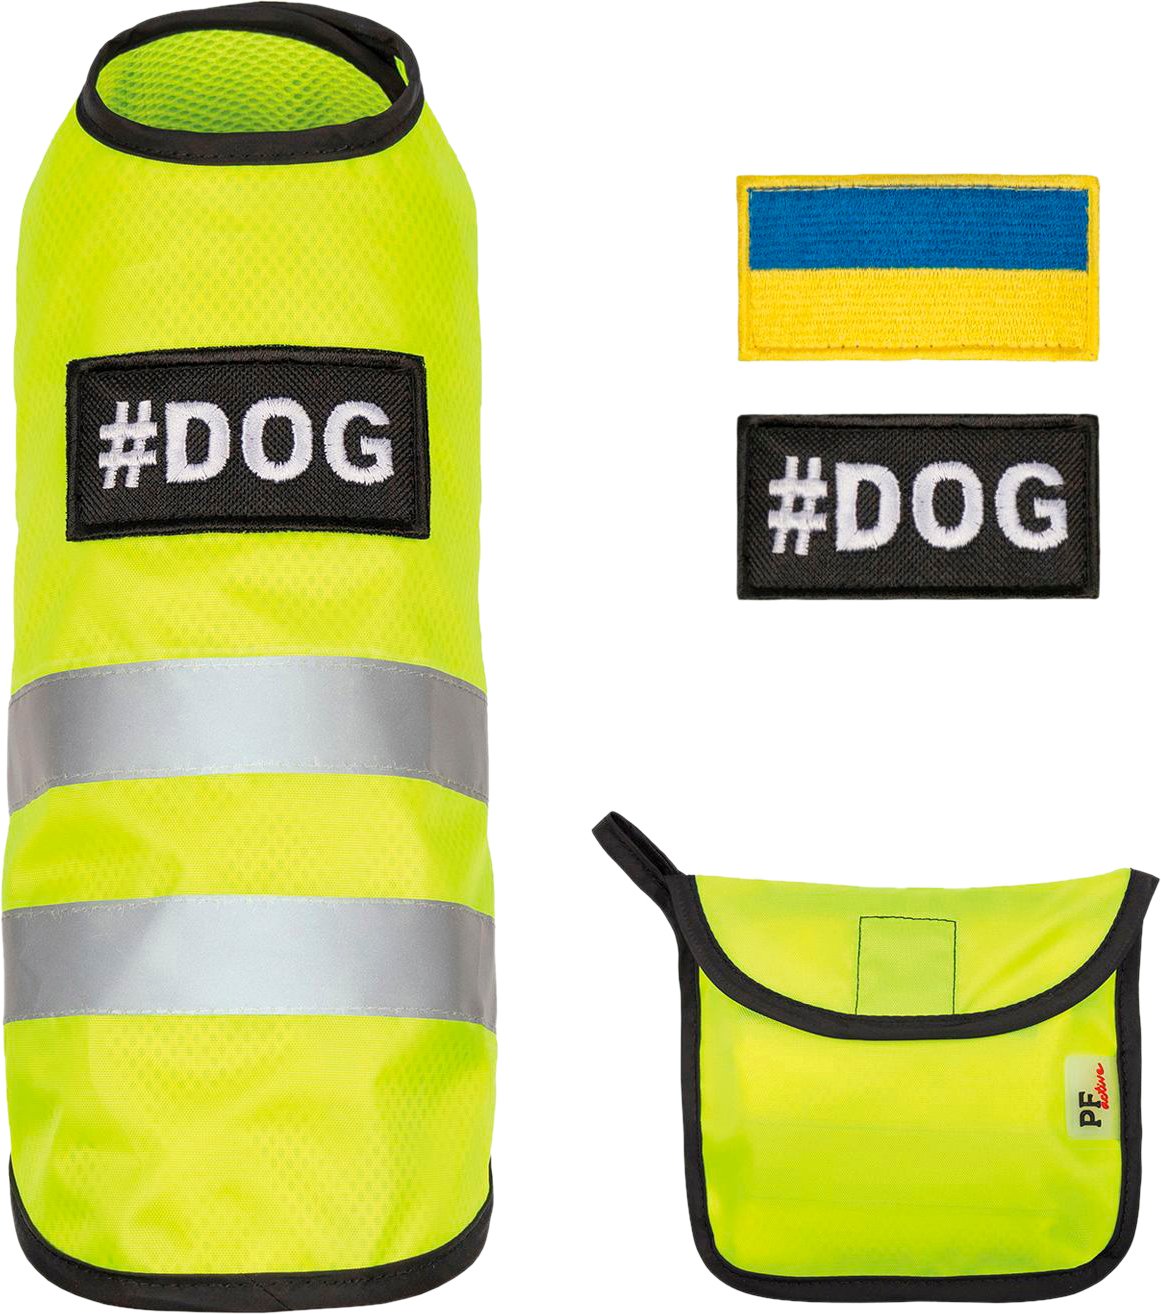 Жилет+флис для собак Pet Fashion Warm Yellow Vest размер L желтый фото 3